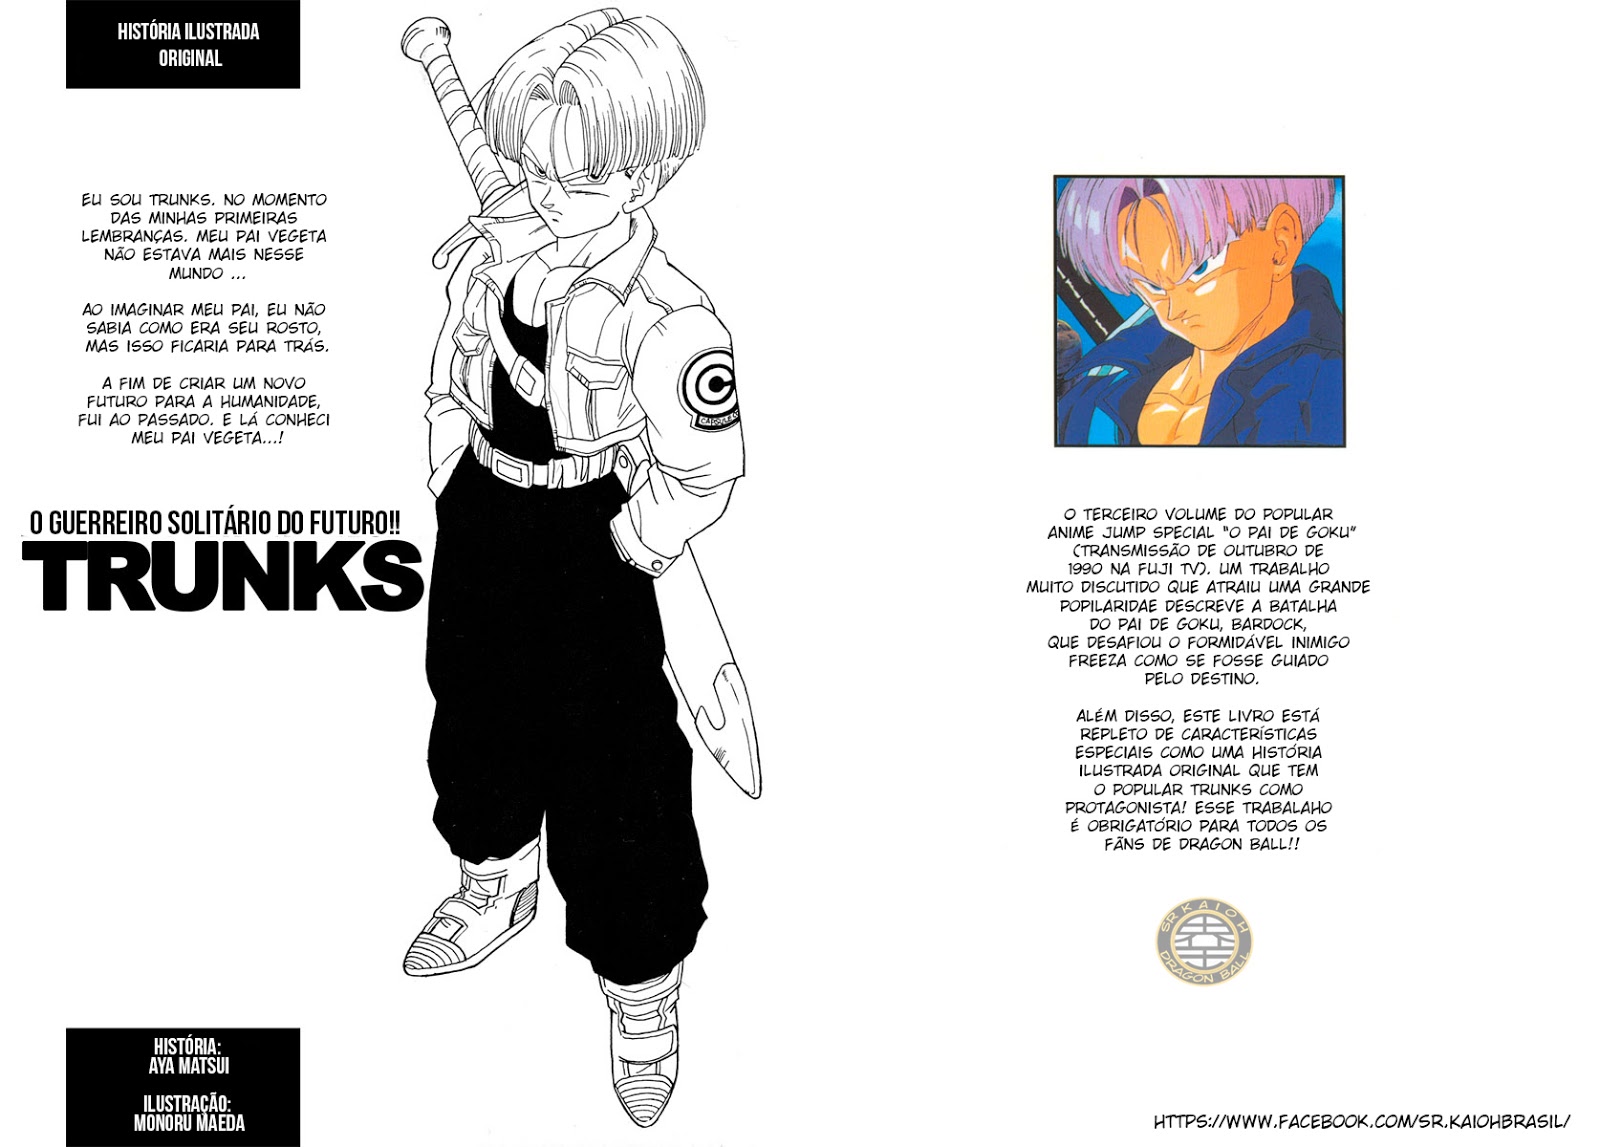 O Guerreiro Solitário do Futuro!! Trunks - DBZ Anime Special 03